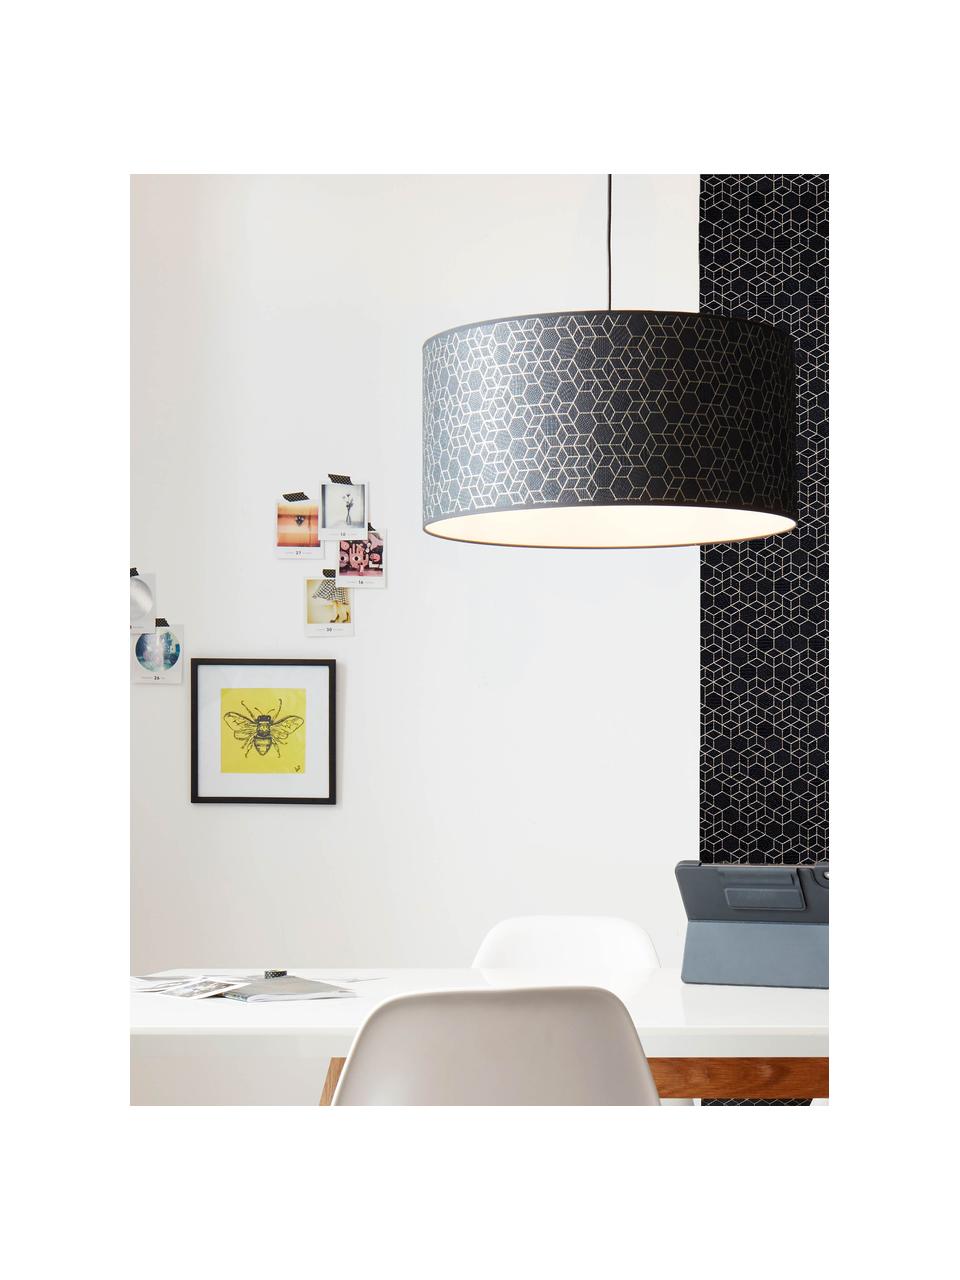 Hanglamp Galance in zwart, Lampenkap: stof, Baldakijn: kunststof, Zwart, Ø 50 x H 25 cm